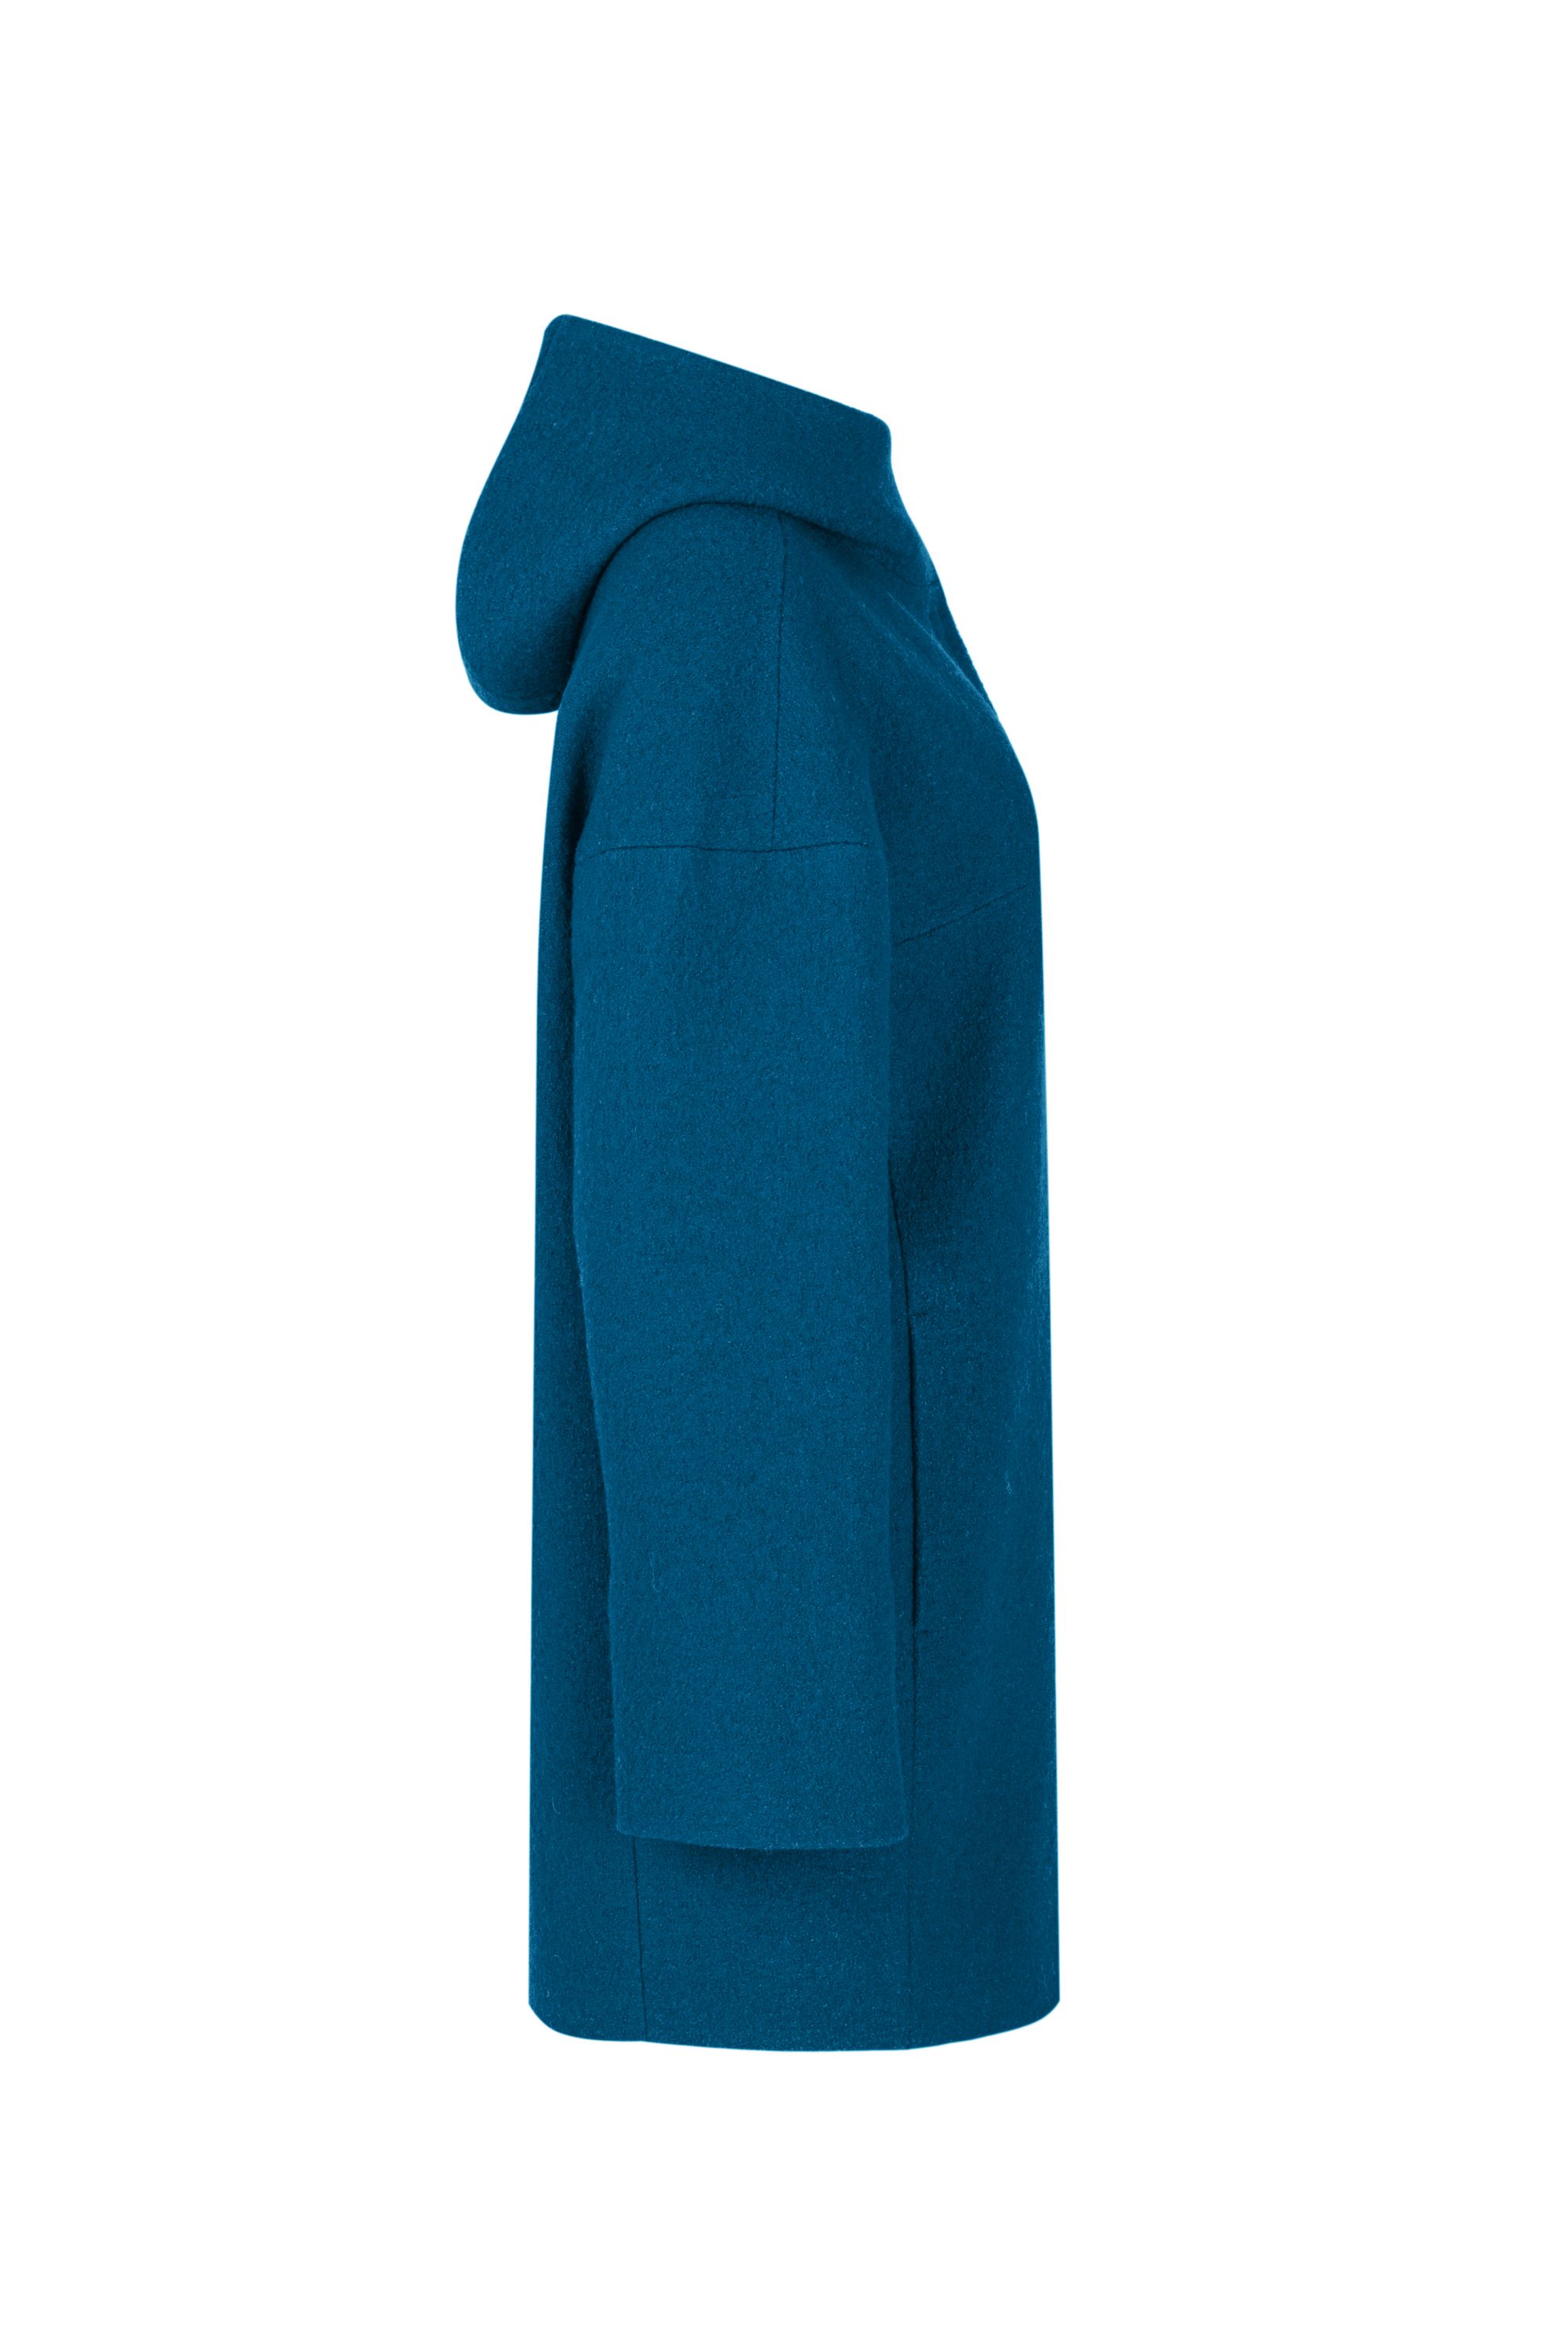 Пальто женское демисезонное 1-12841-1. Фото 2.